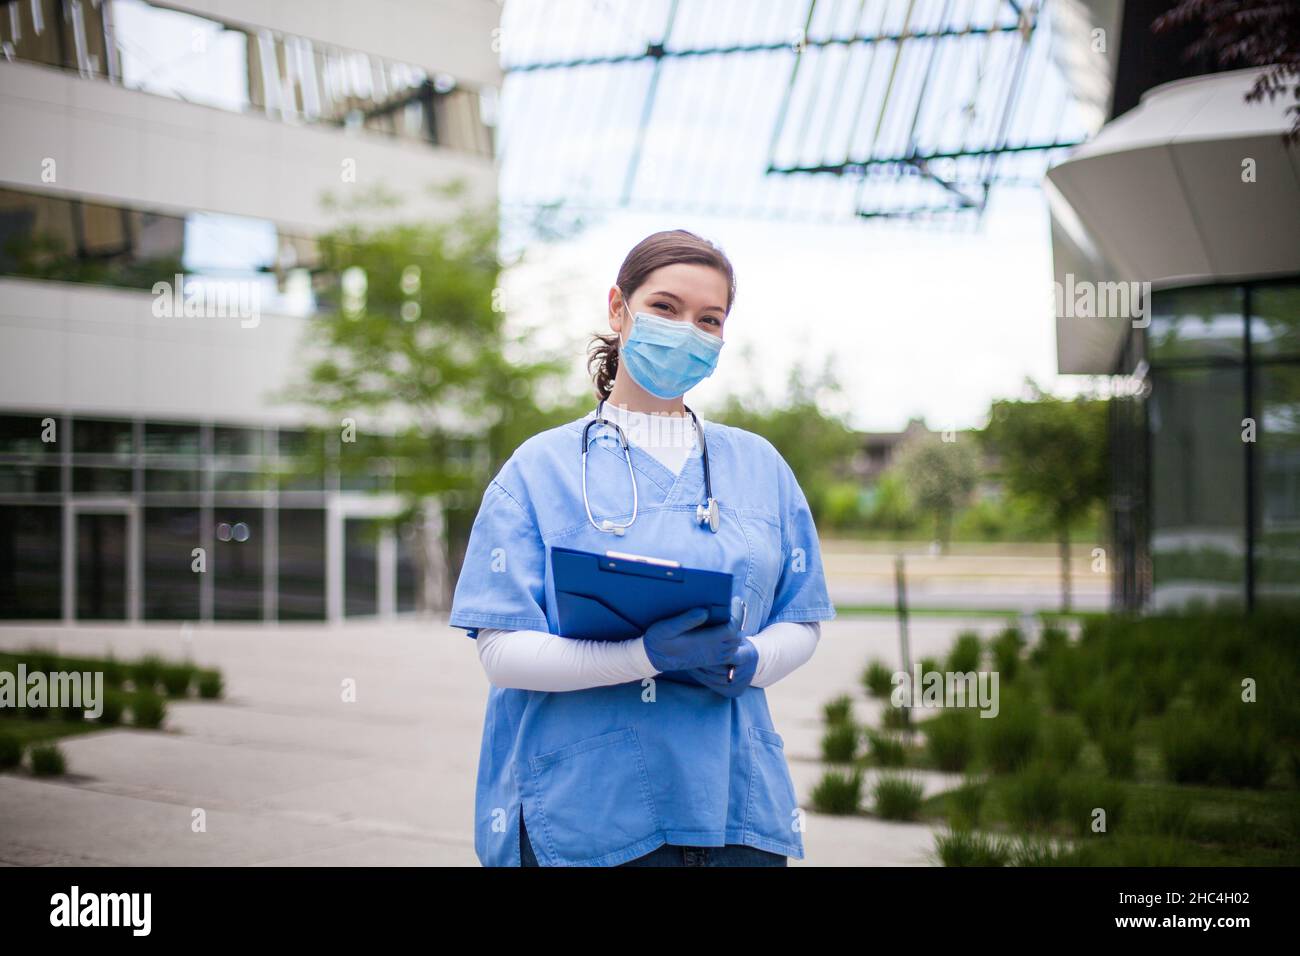 Joven jefa de personal médico con uniforme azul, retrato de especialista clave de primera línea de trabajadores frente a la clínica de la institución de salud o de la clínica de enfermería Foto de stock